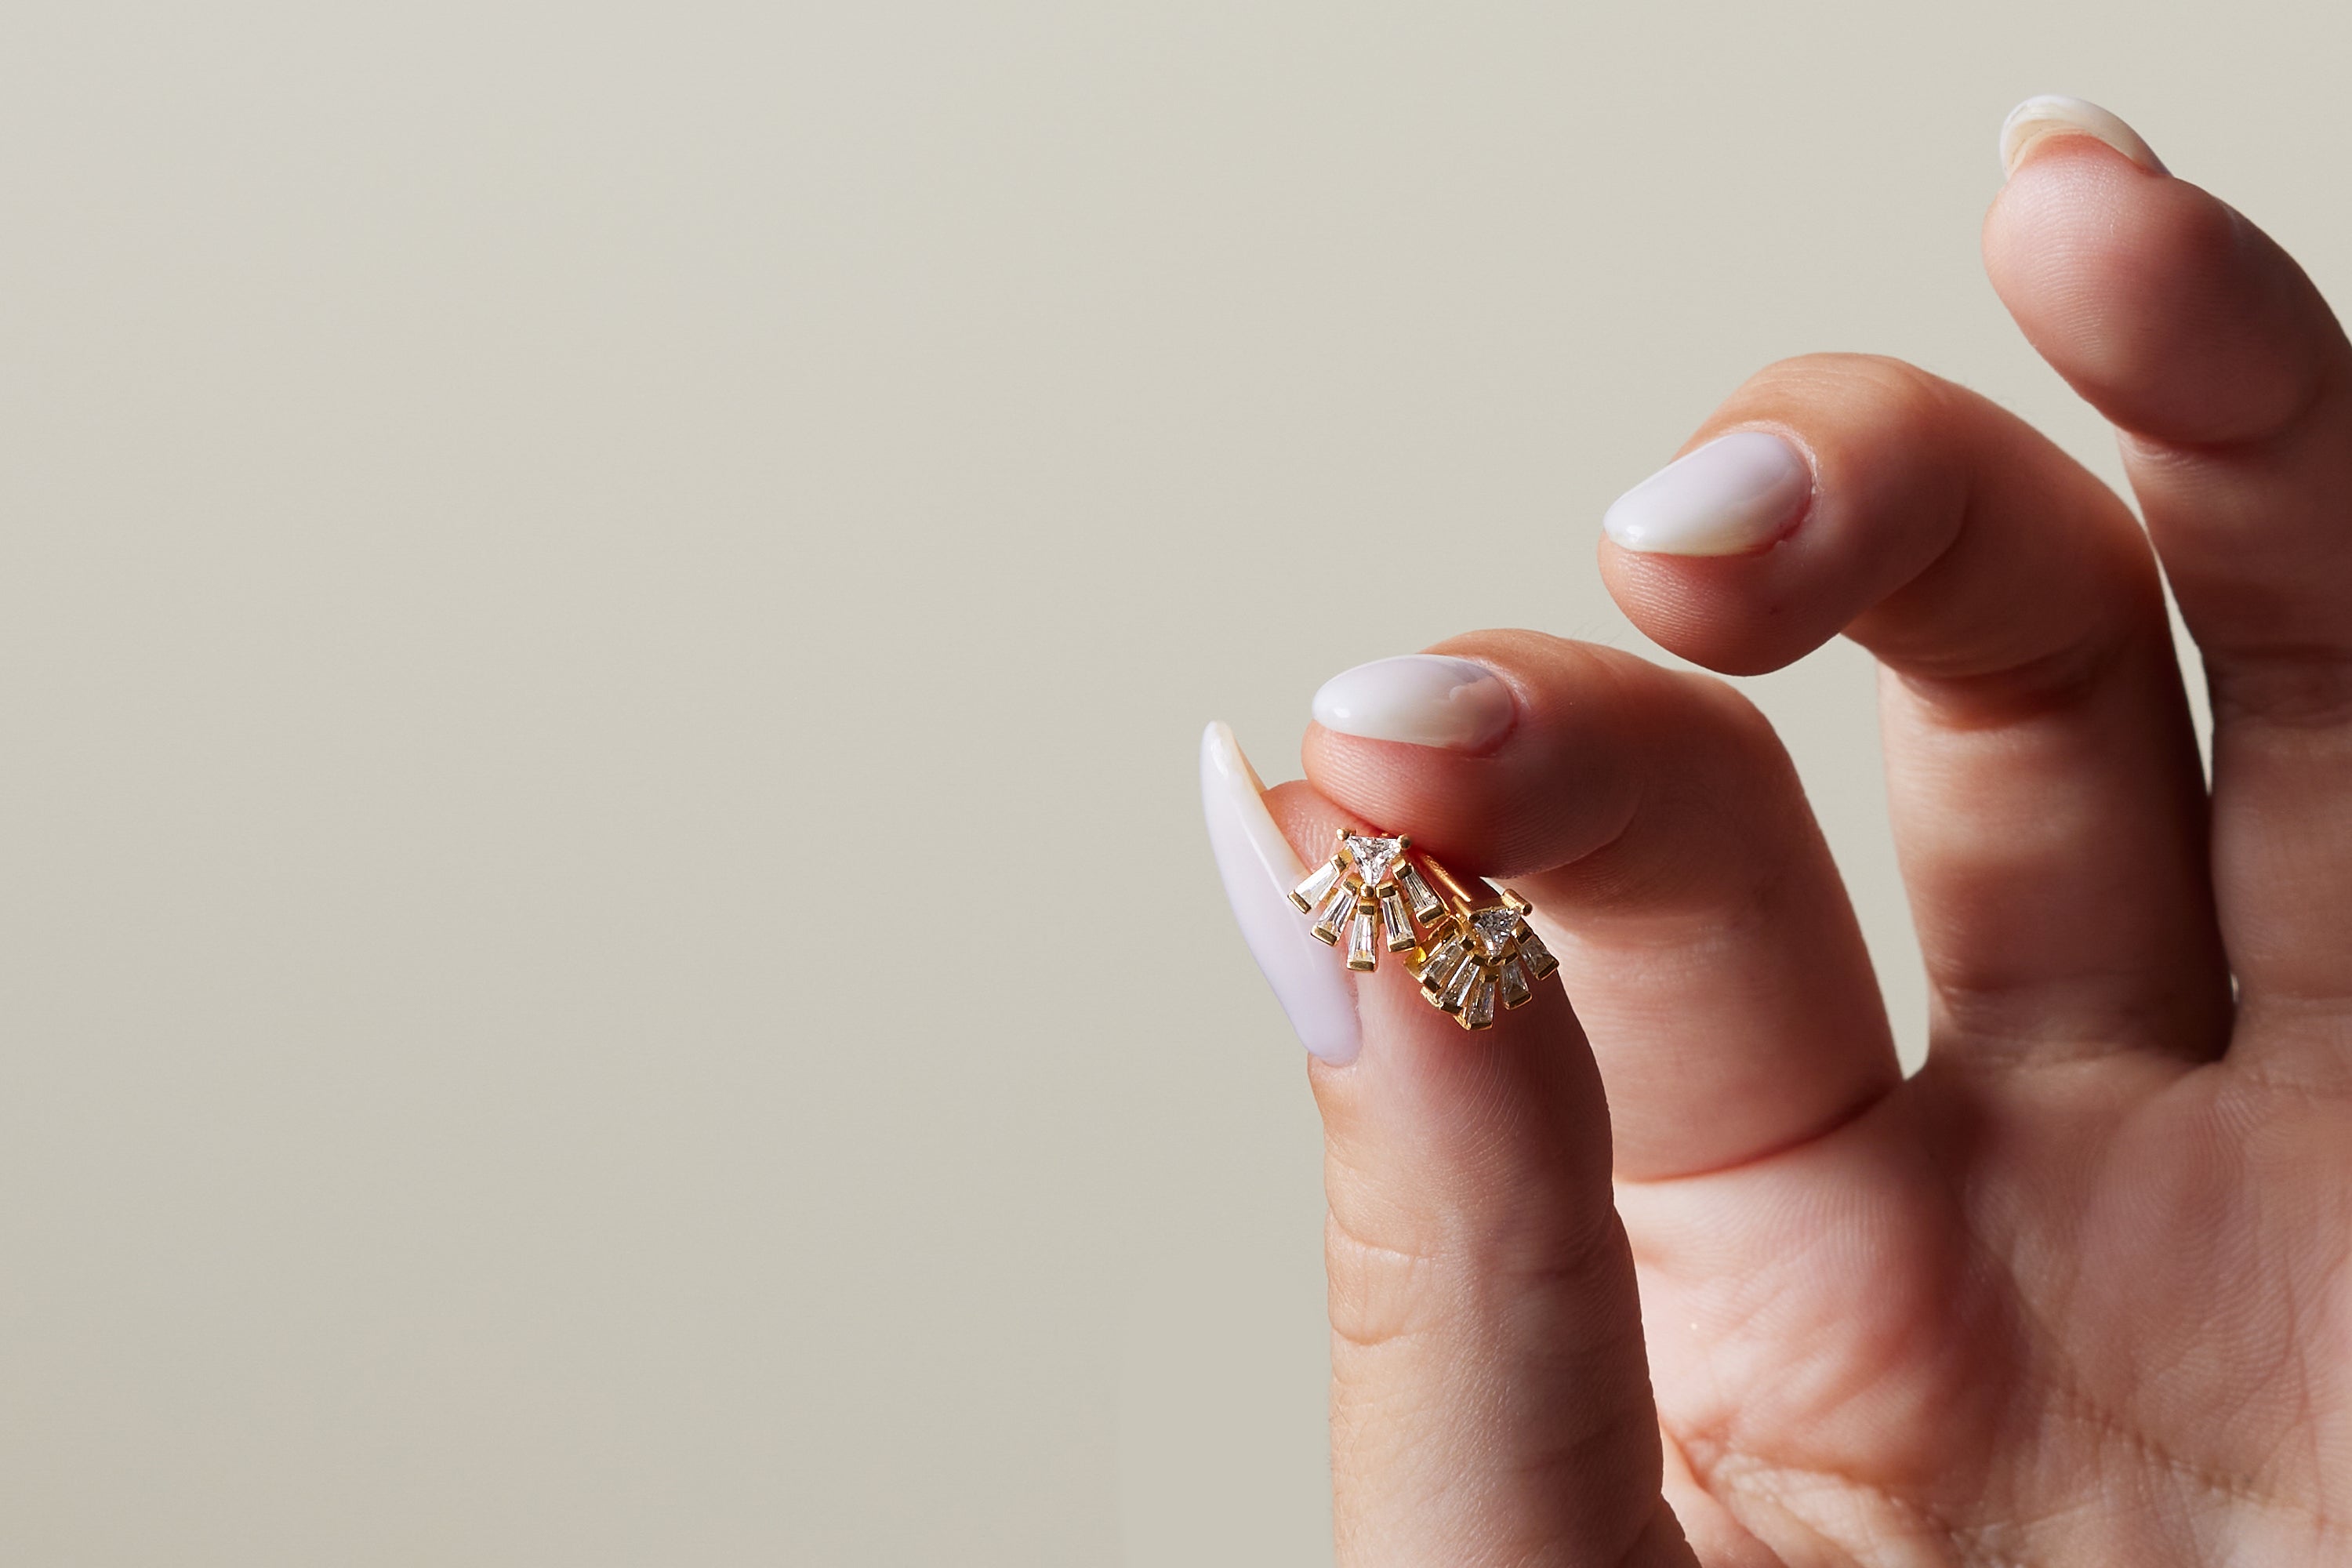 Fan shaped diamond earrings with tapered baguette cut diamonds